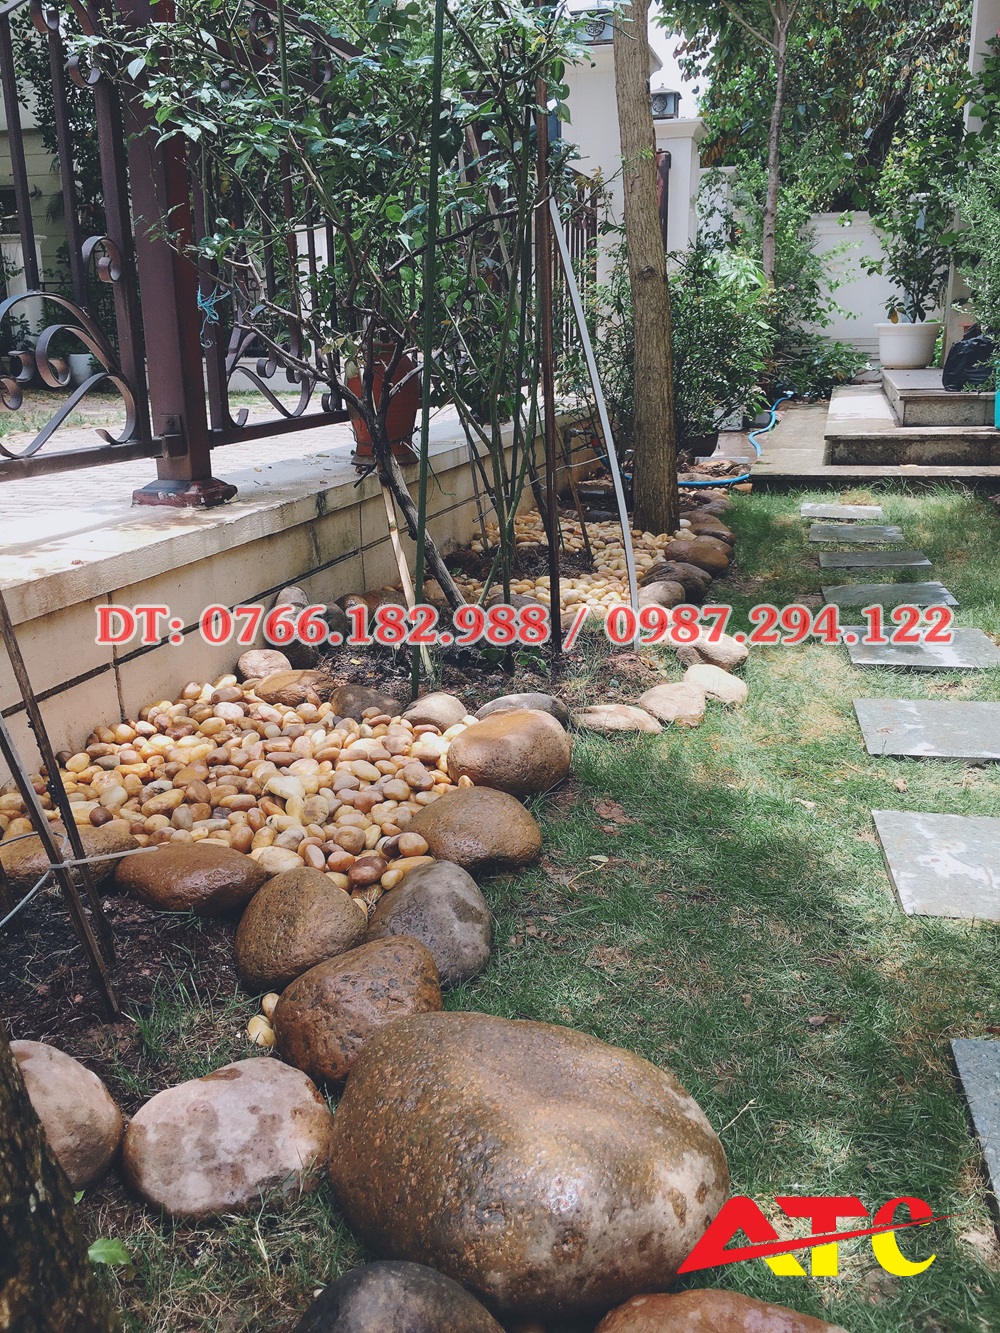 Trang trí sân vườn bằng đá cuội - Cung cấp đá cuội sân vườn giá rẻ